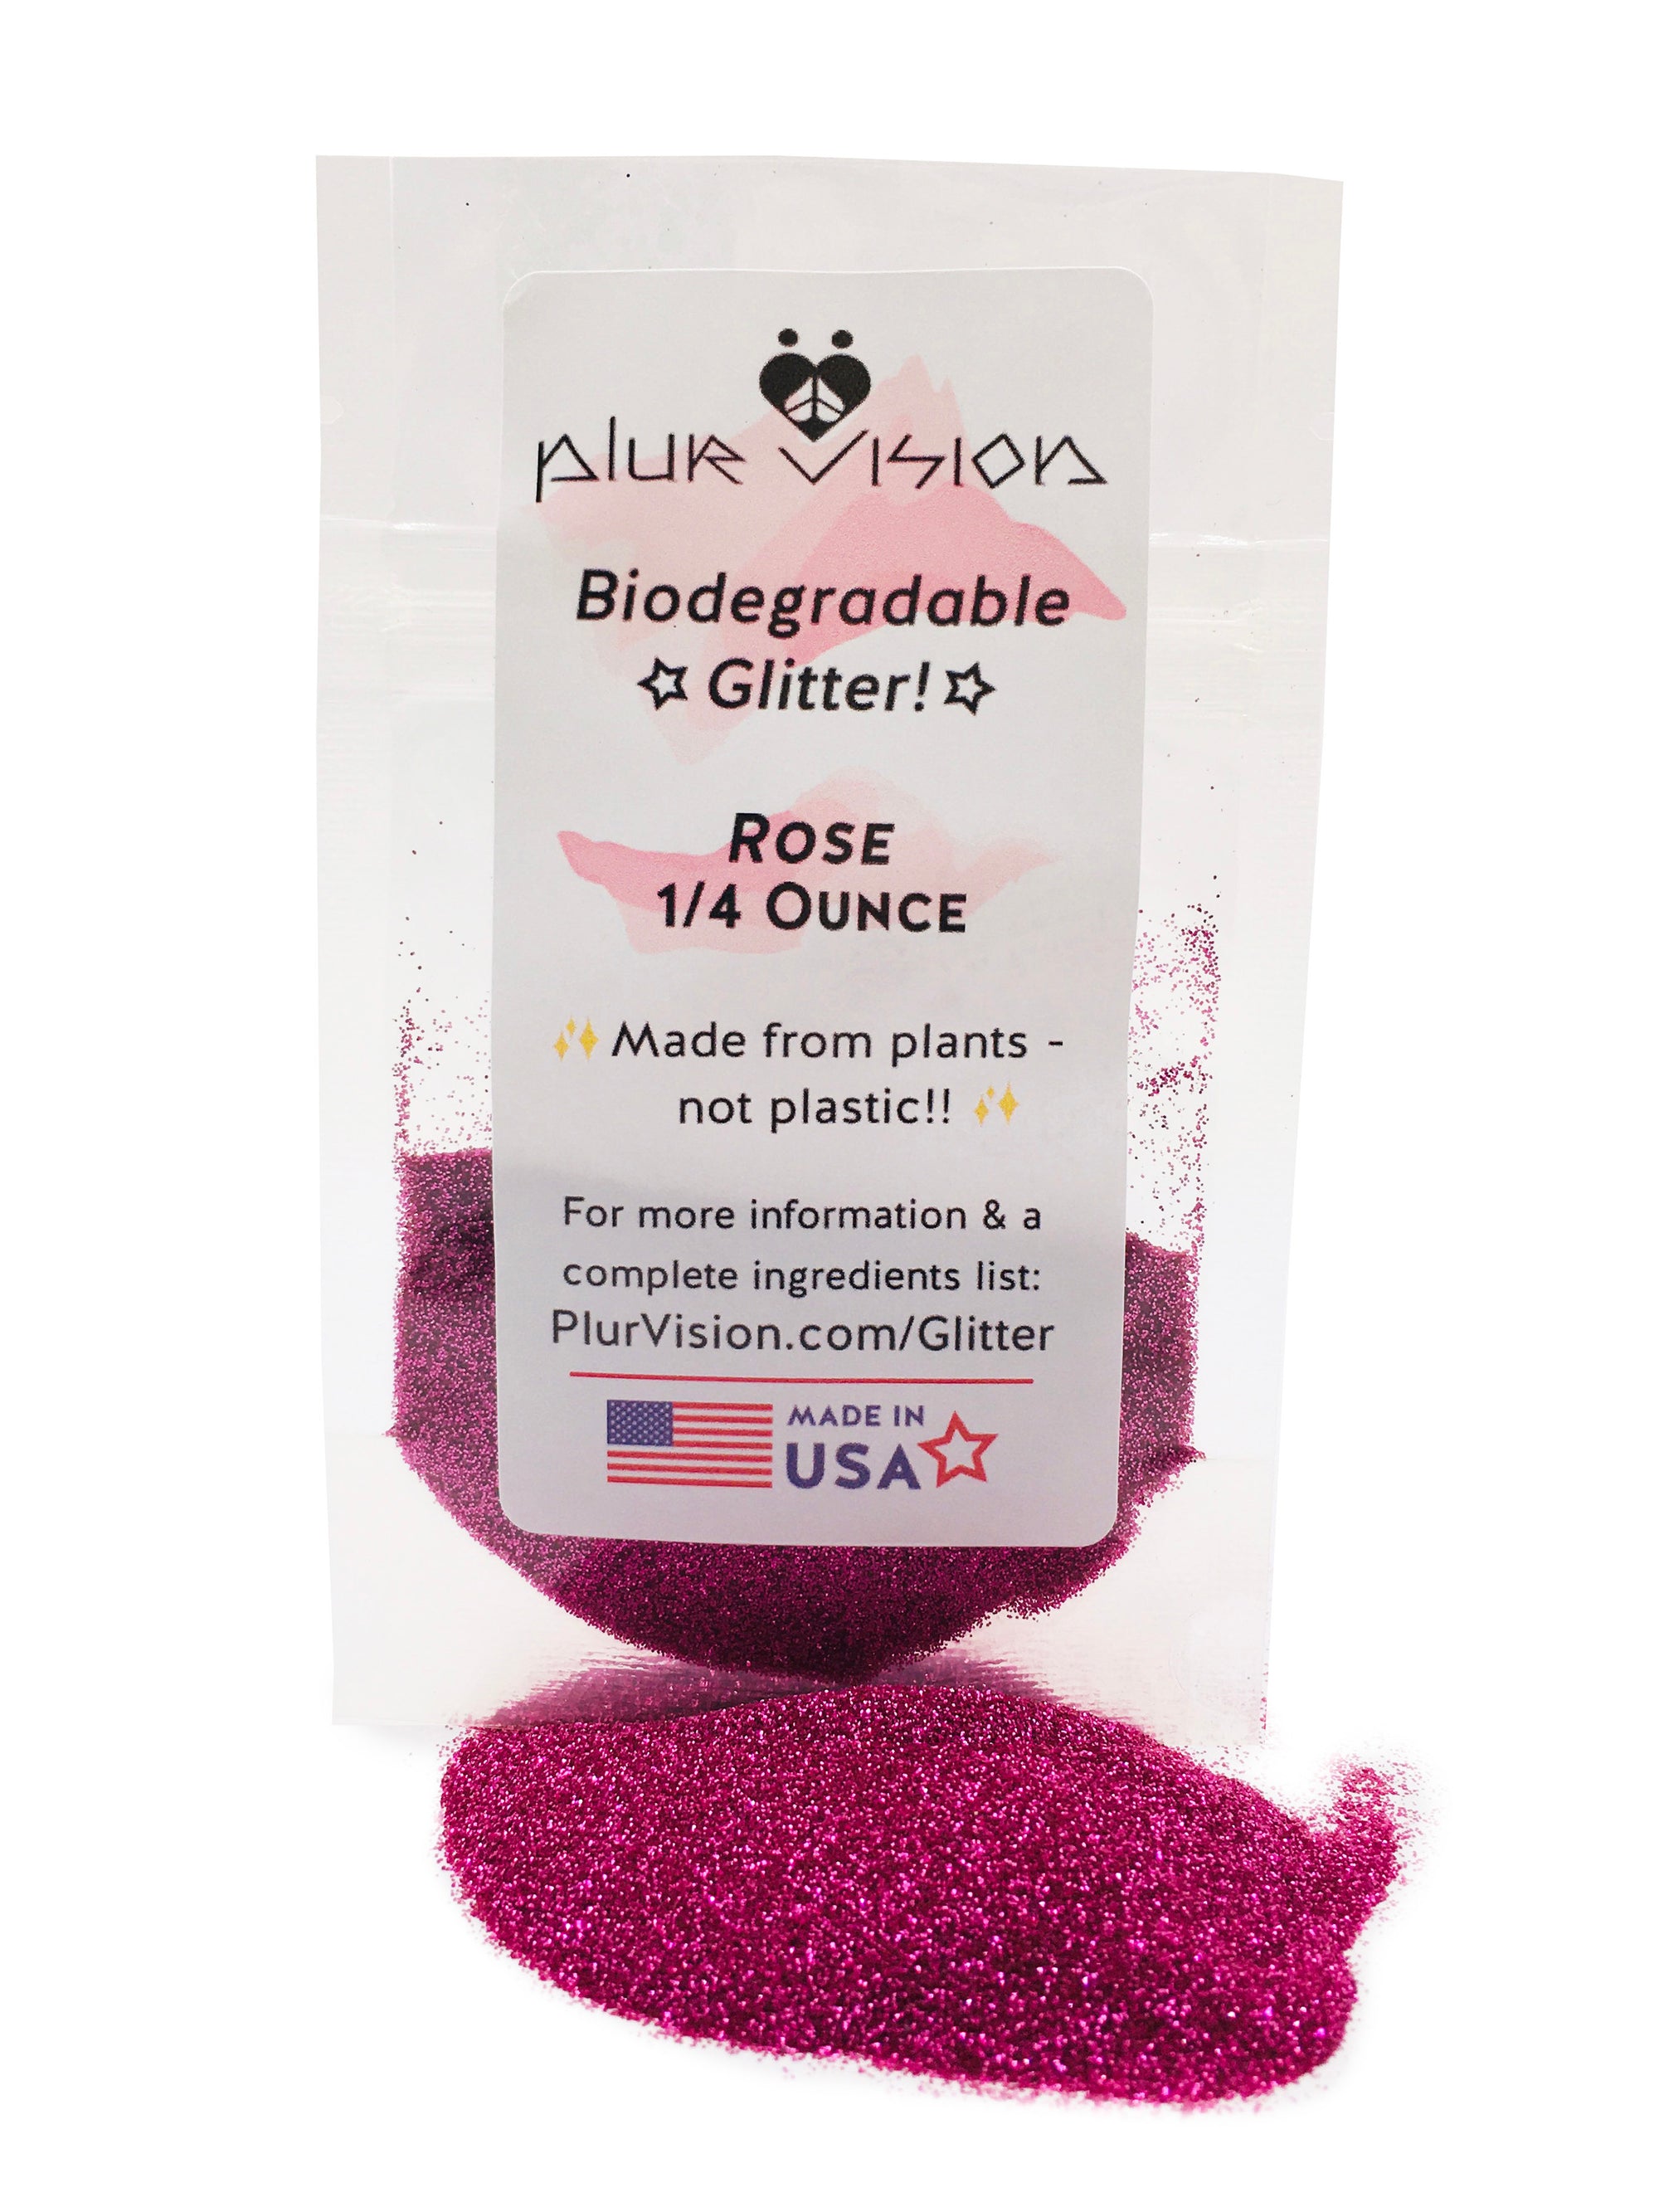 ✨ Rose Biodegradable Glitter! ✨